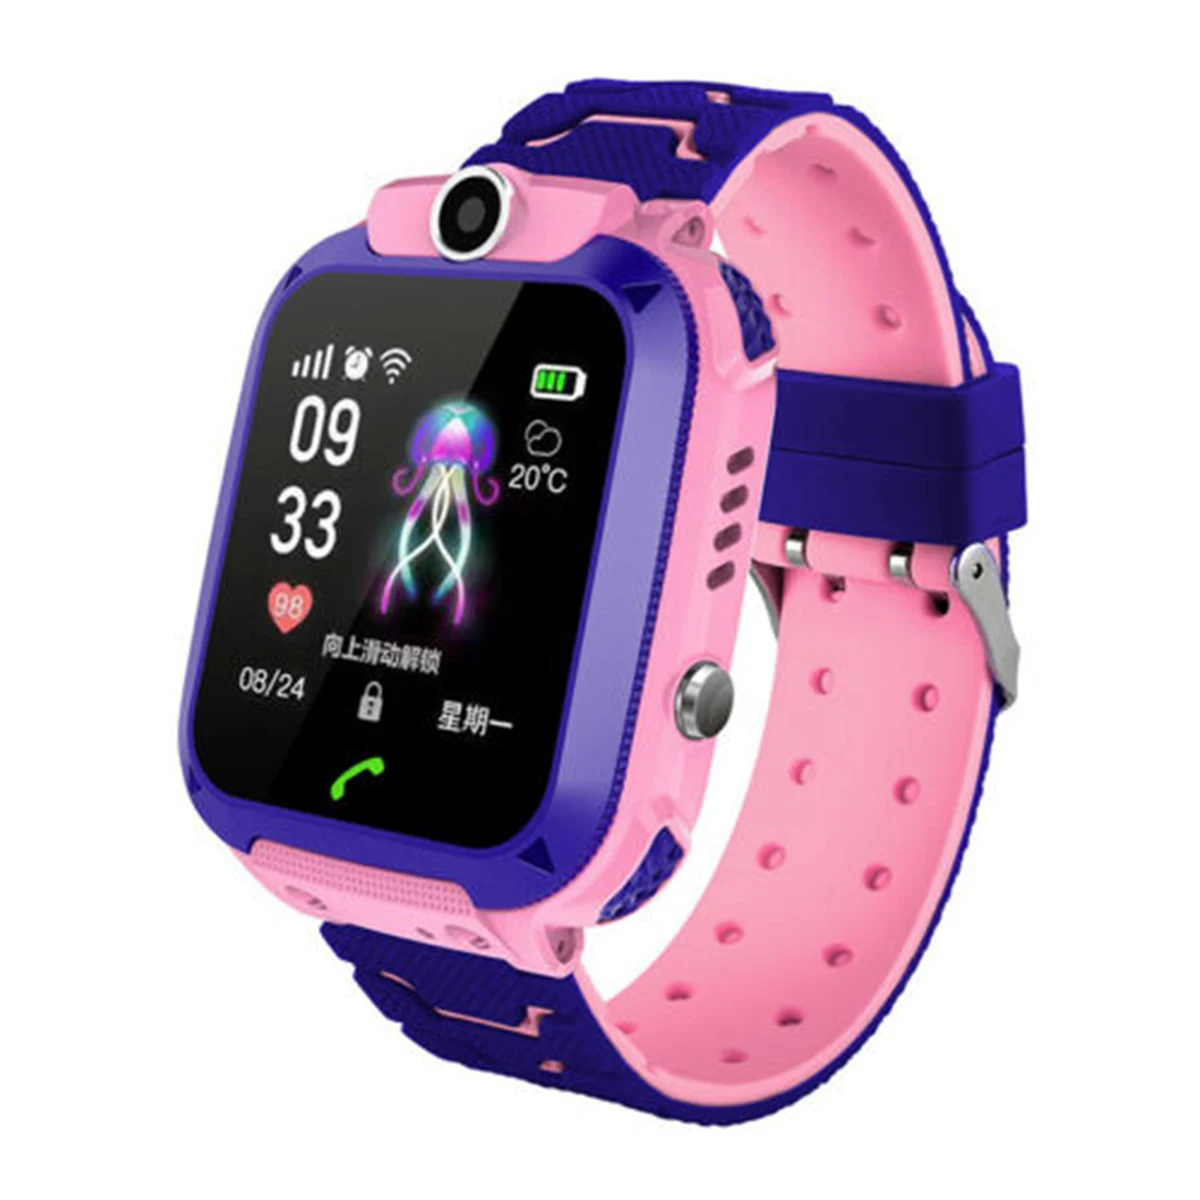 Водонепроницаемые Смарт-часы для детей lbs-трекер умные часы SOS Вызов для детей анти-потеря монитор детские наручные часы для мальчиков и девочек - Цвет: Pink Waterproof